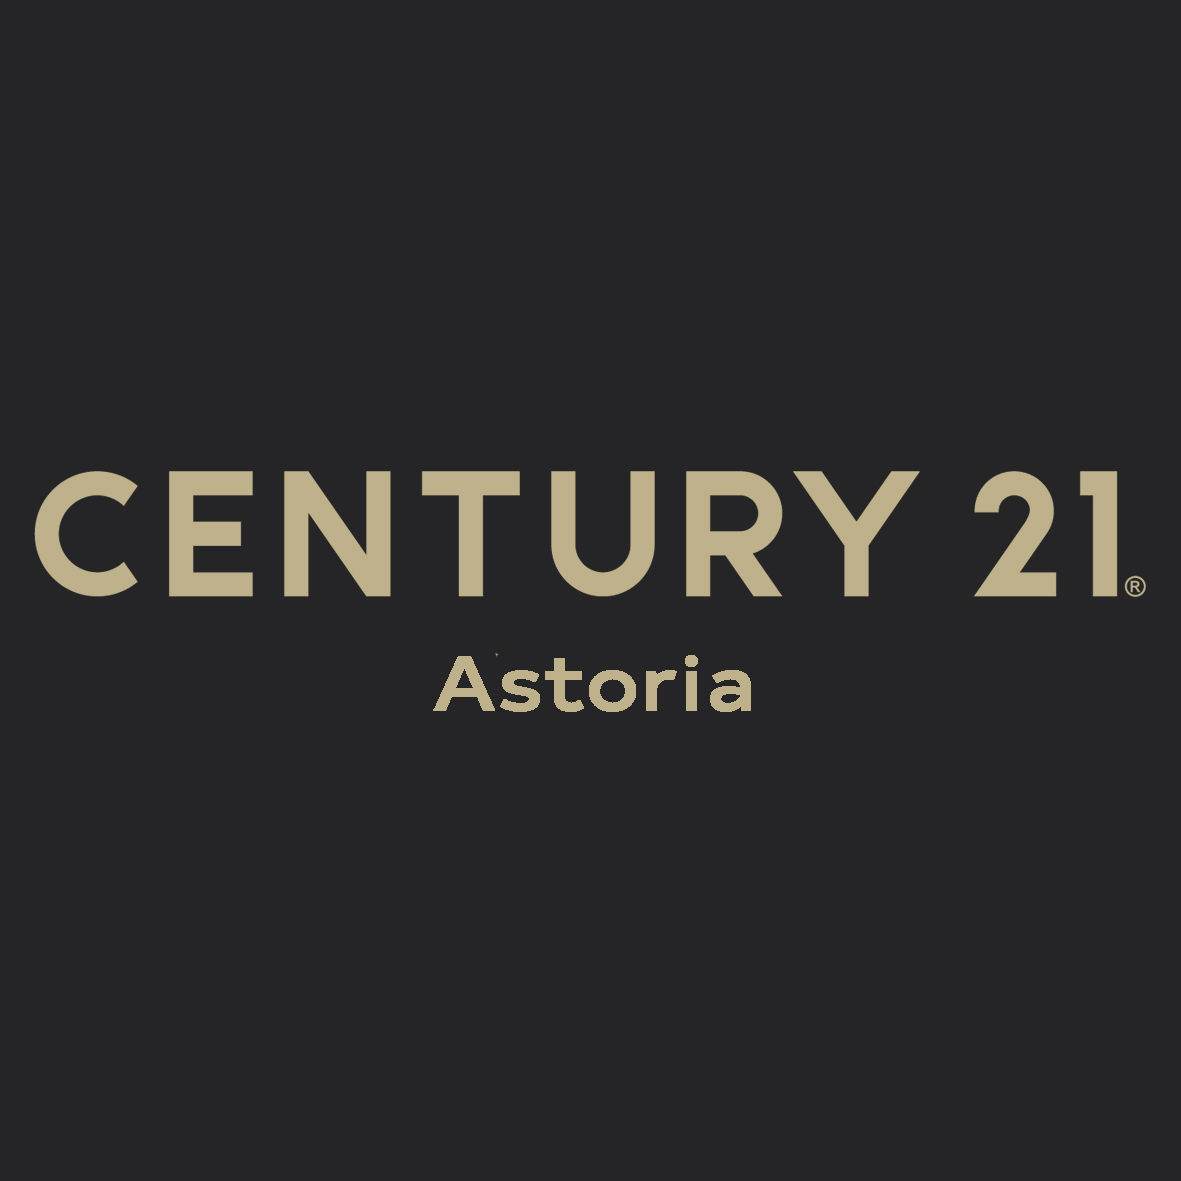 CENTURY 21 Astoria